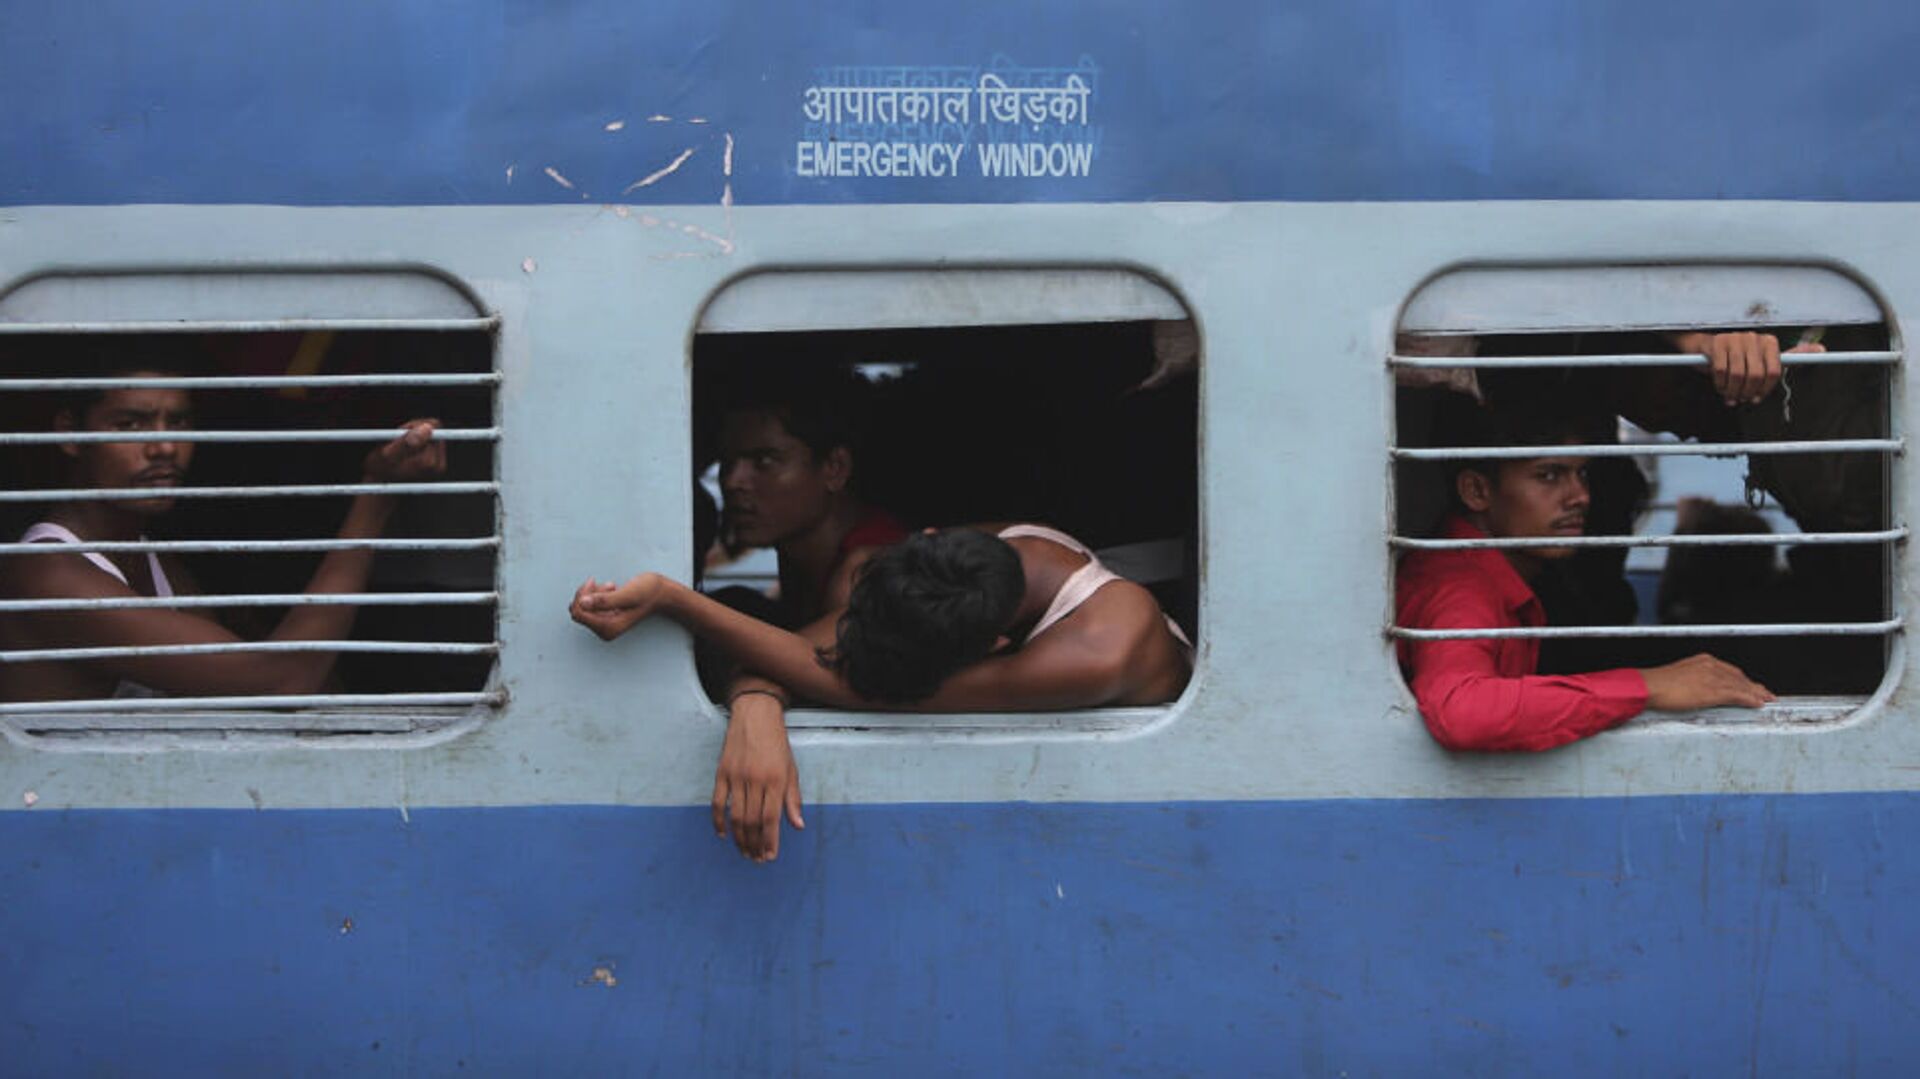 印度列车脱轨相撞事故死亡人数升至233人-侨报网